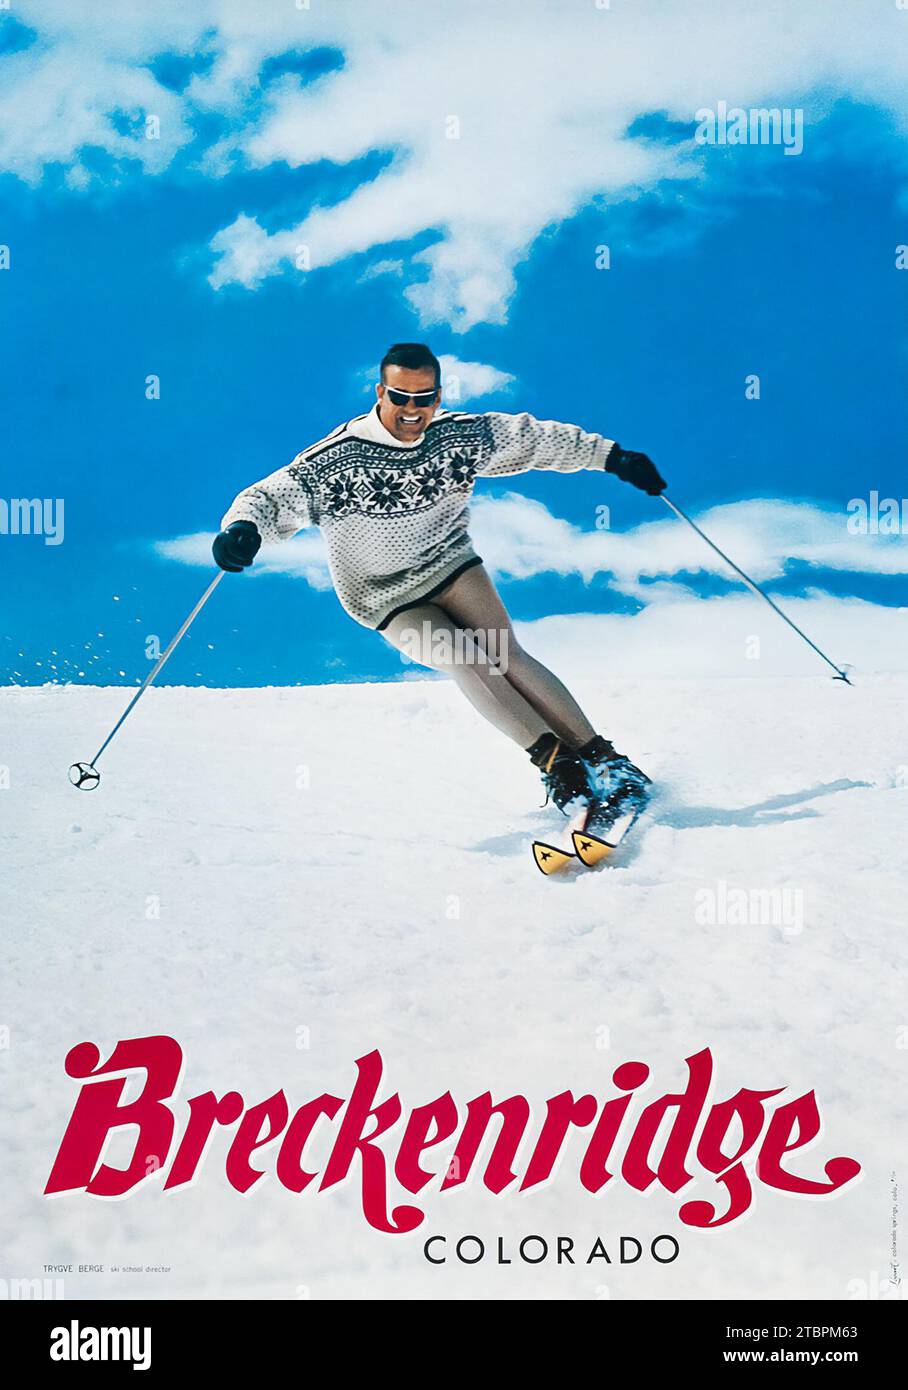 Affiche de sport d'hiver - Breckenridge, Colorado, affiche de voyage des années 1960 feat a heureux skieur Banque D'Images